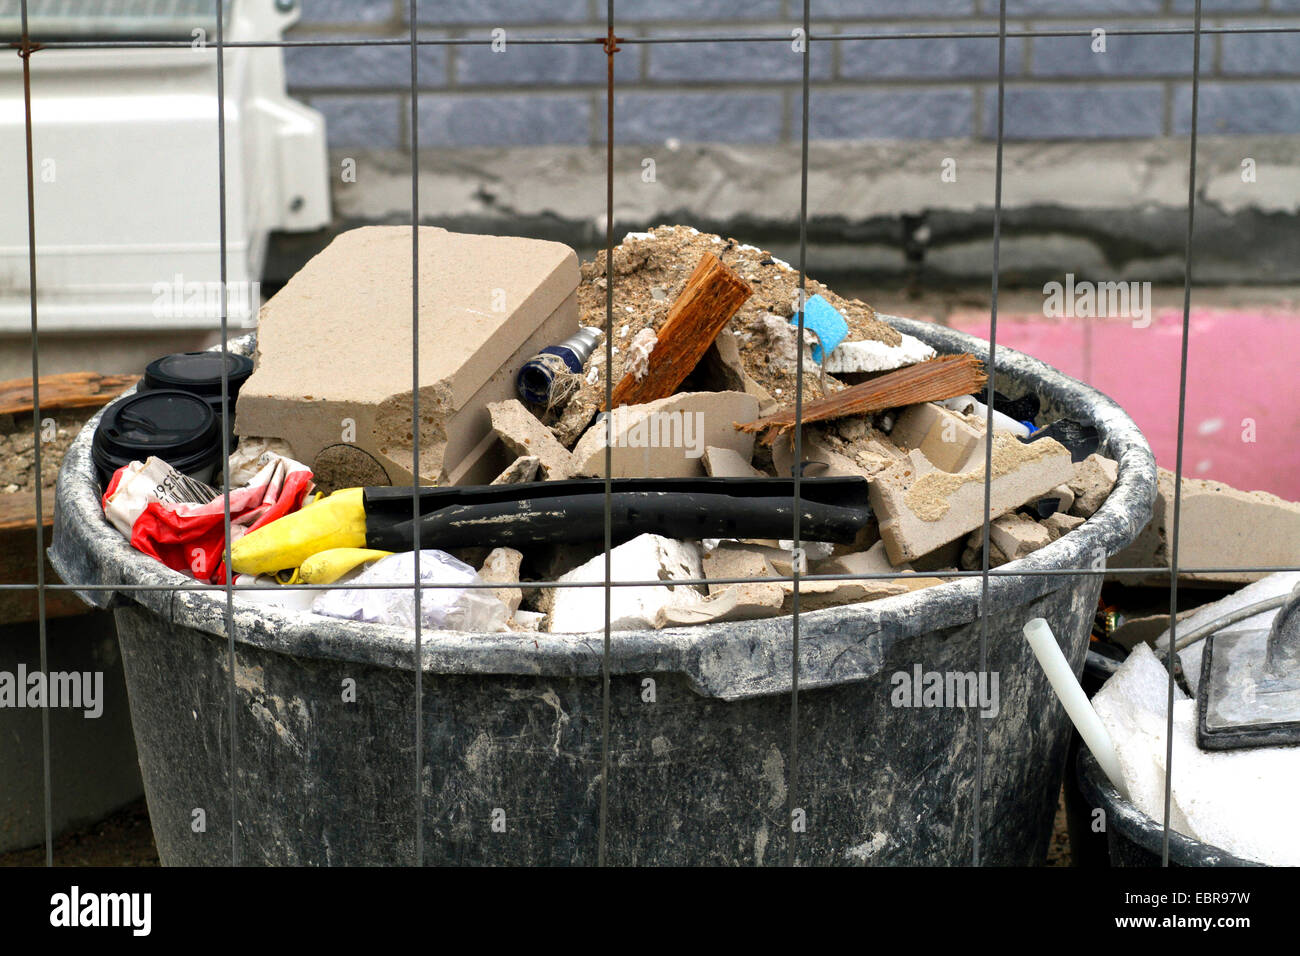 demolition waste in a mortar bin, Germany Stock Photo